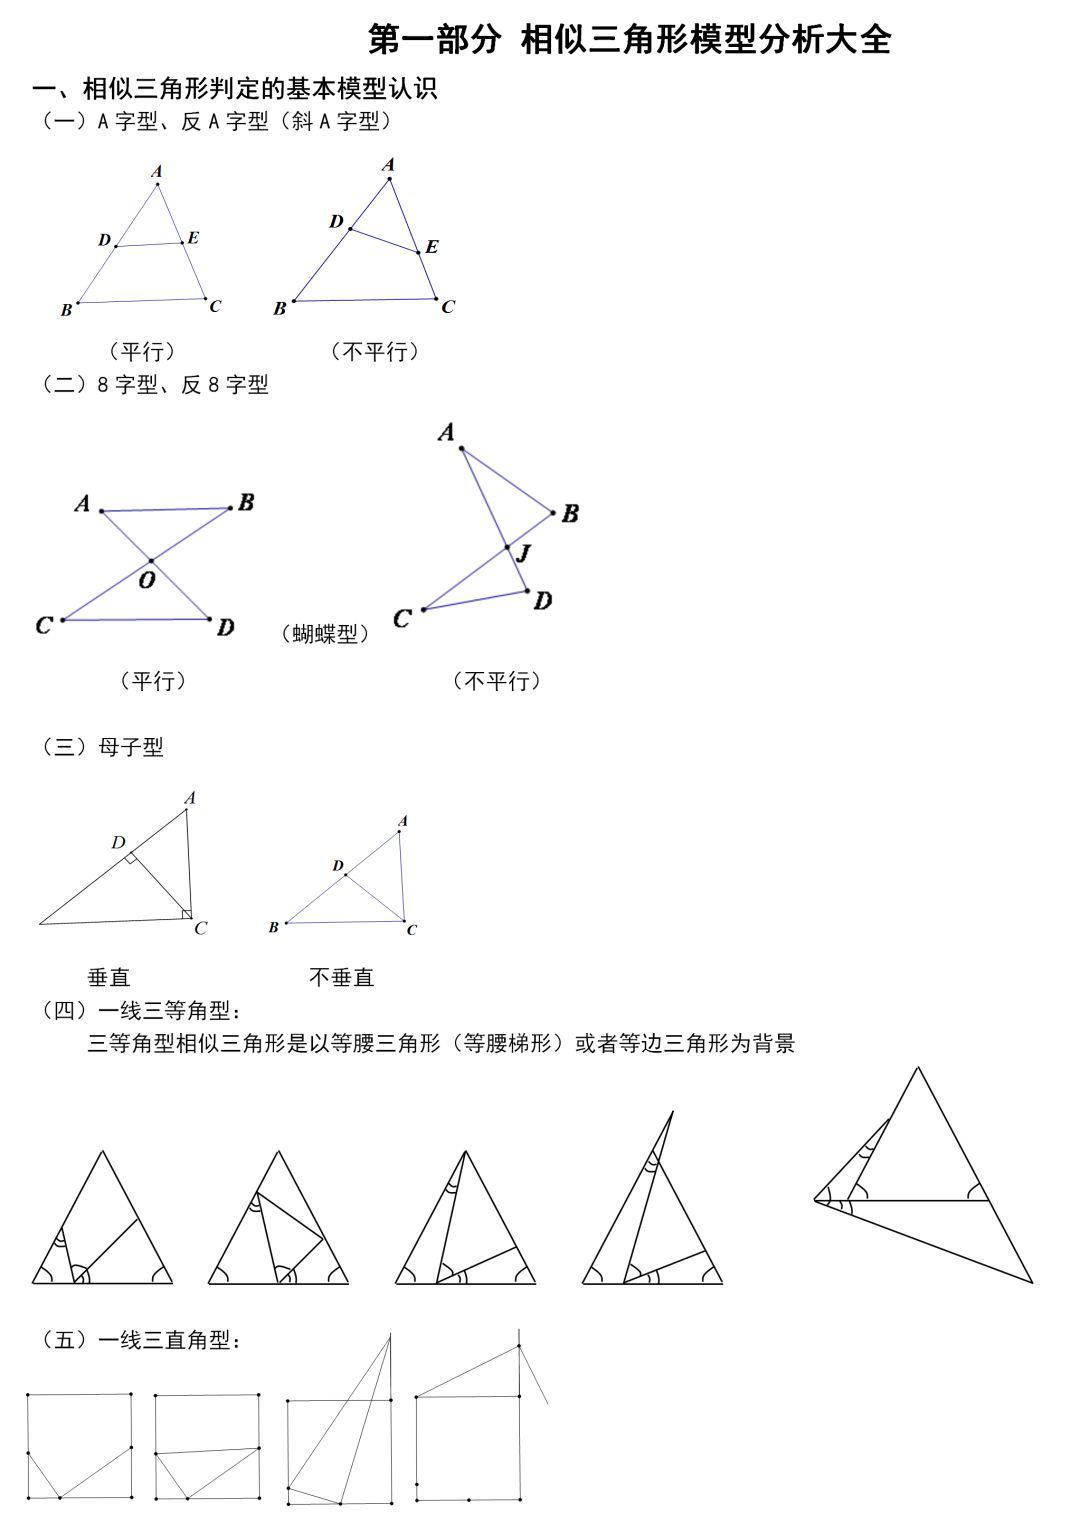 九年级数学相似三角形模型分析和典型例题讲解